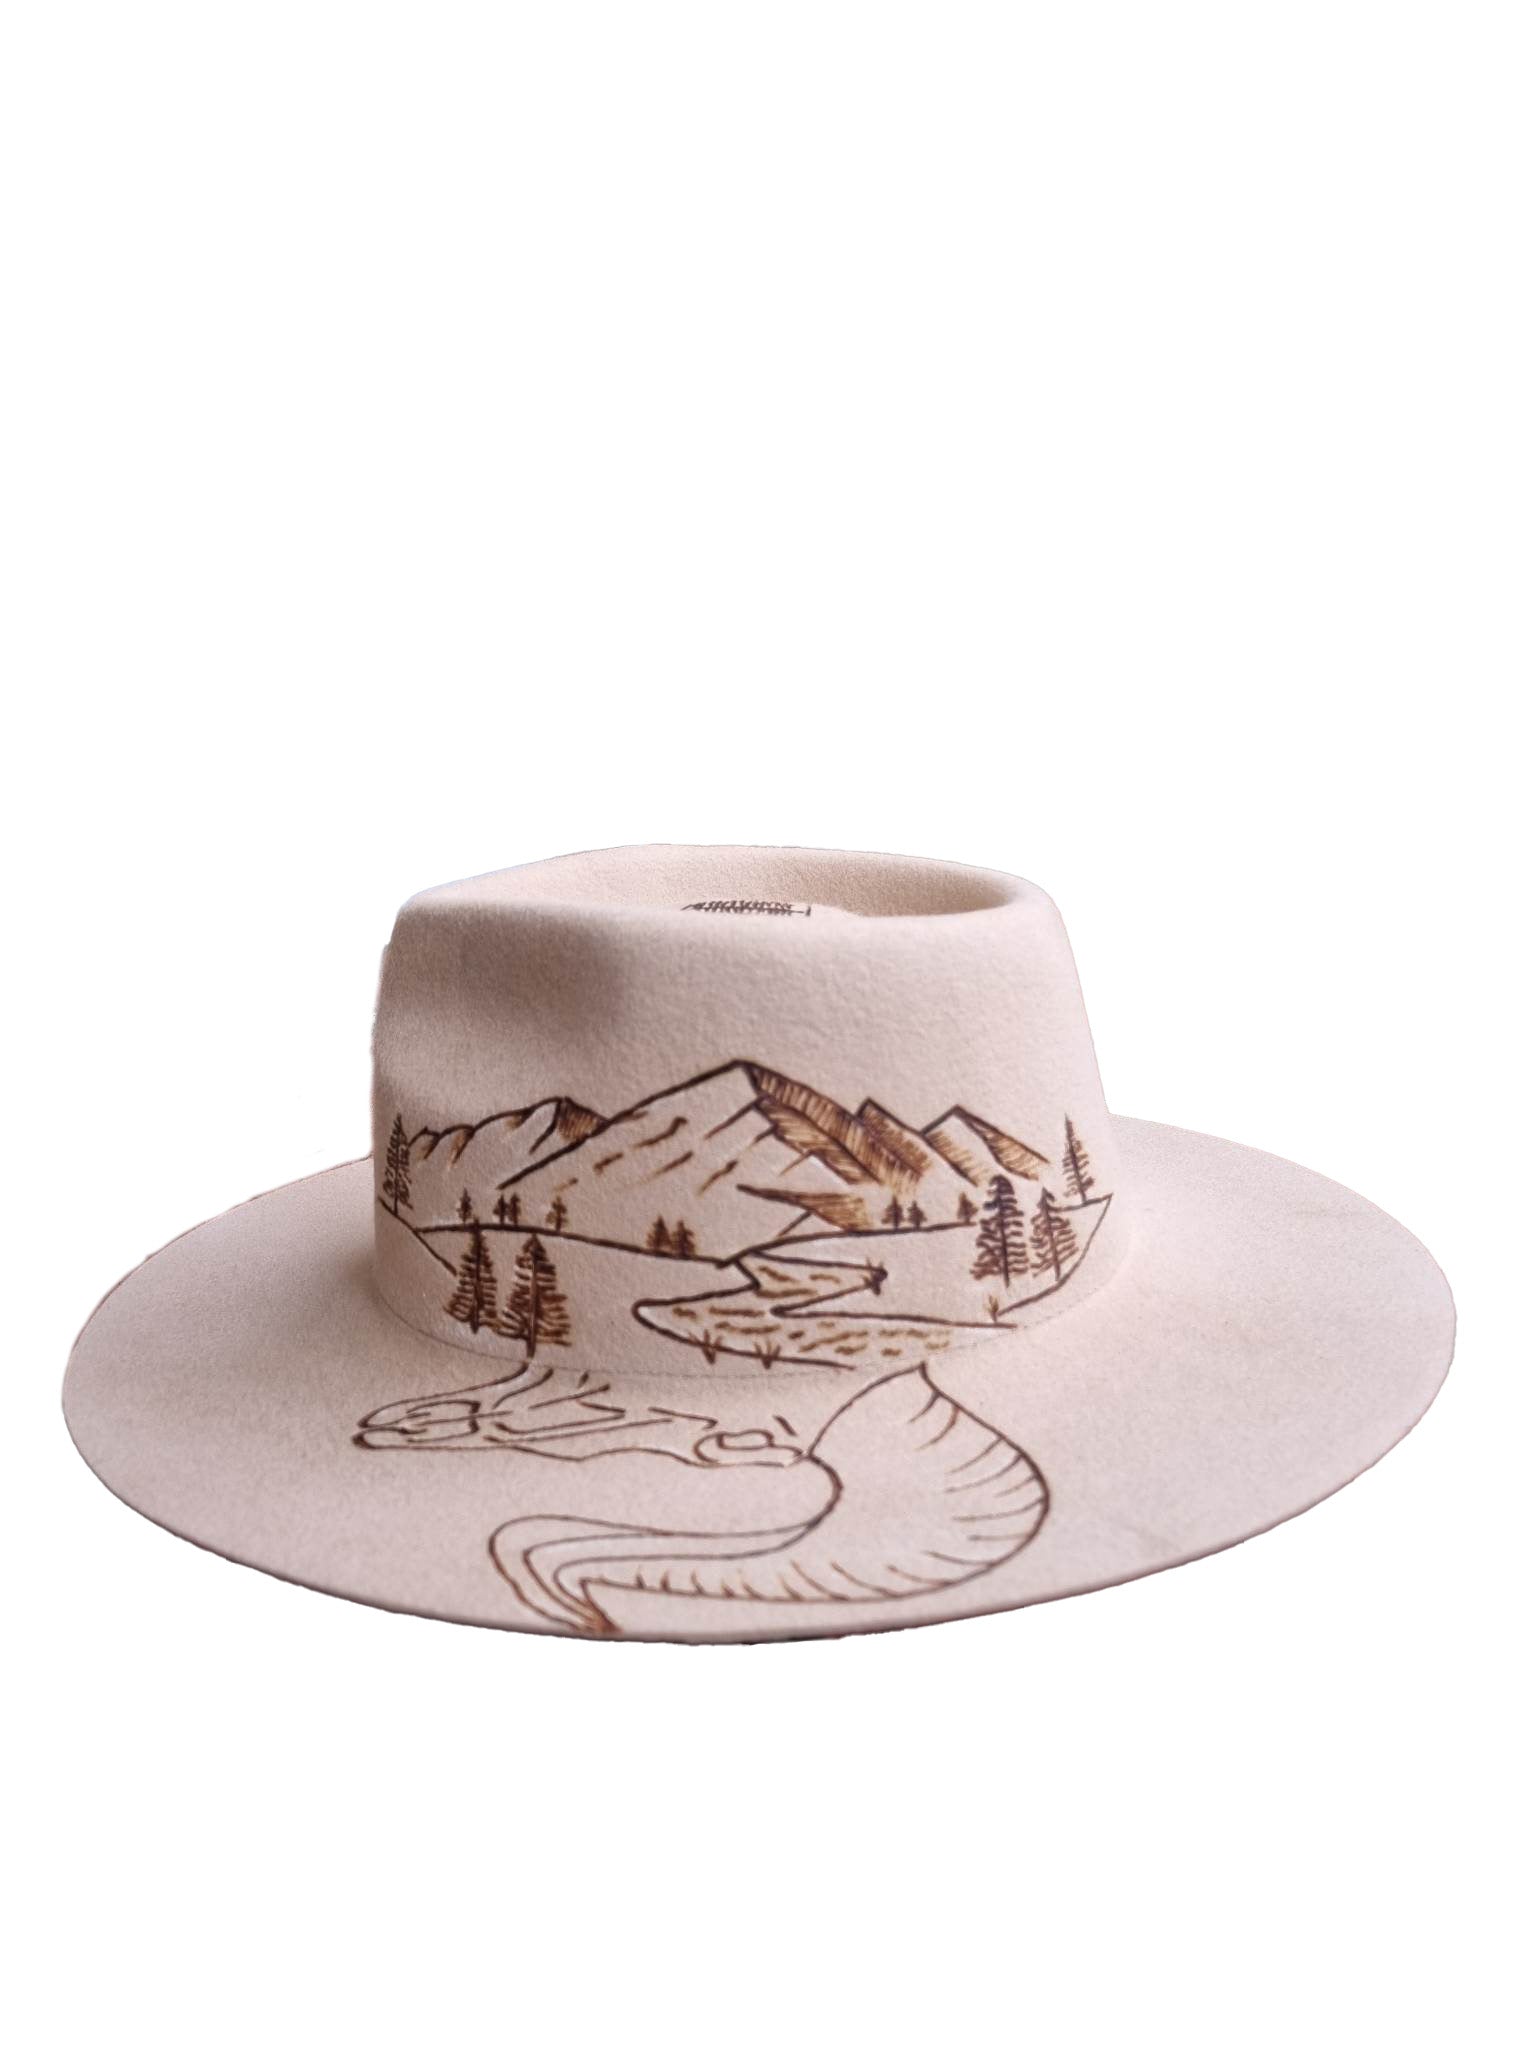 Custom Felt Pyrography Cowboy Hat